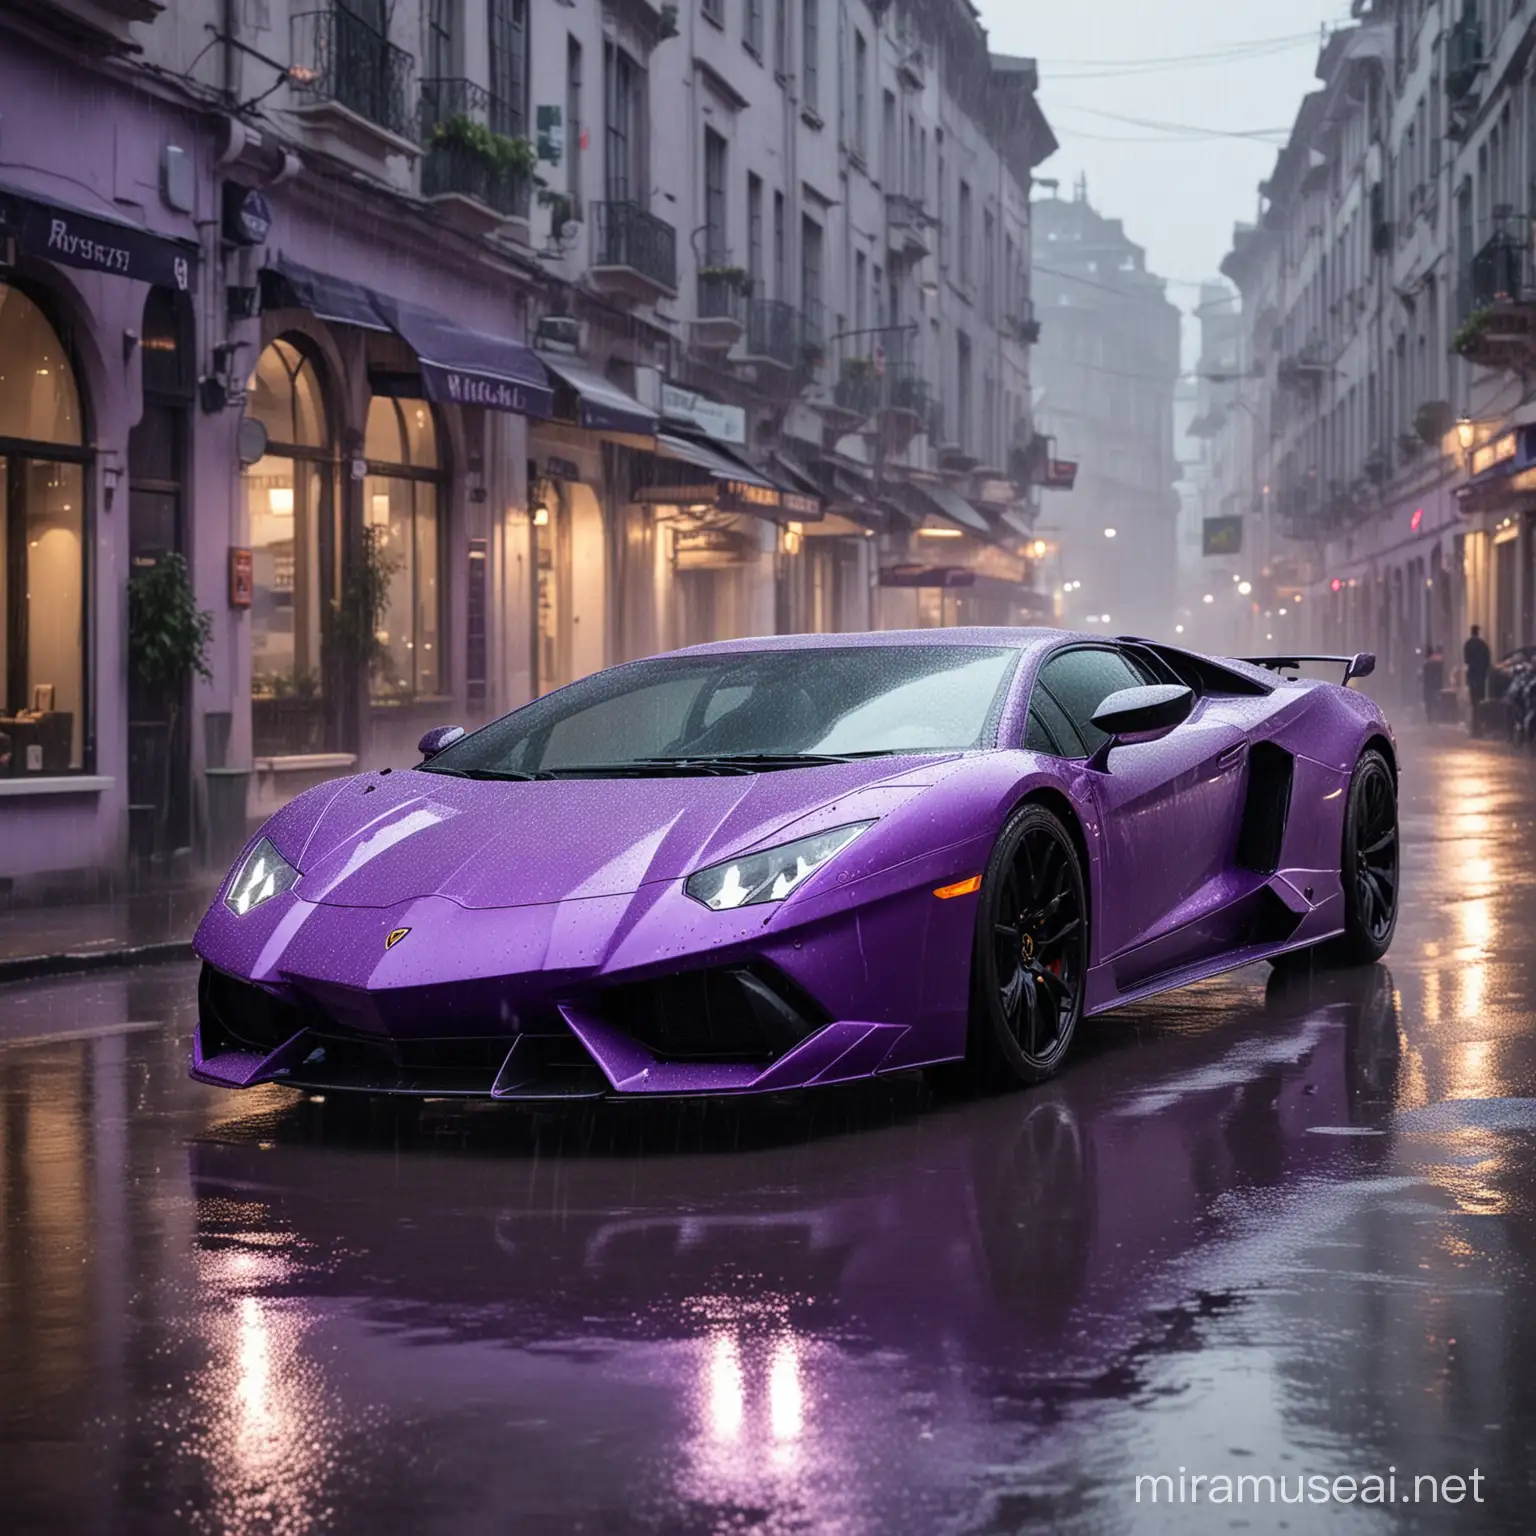 Фиолетовая ламборгини едет по дождливой улице